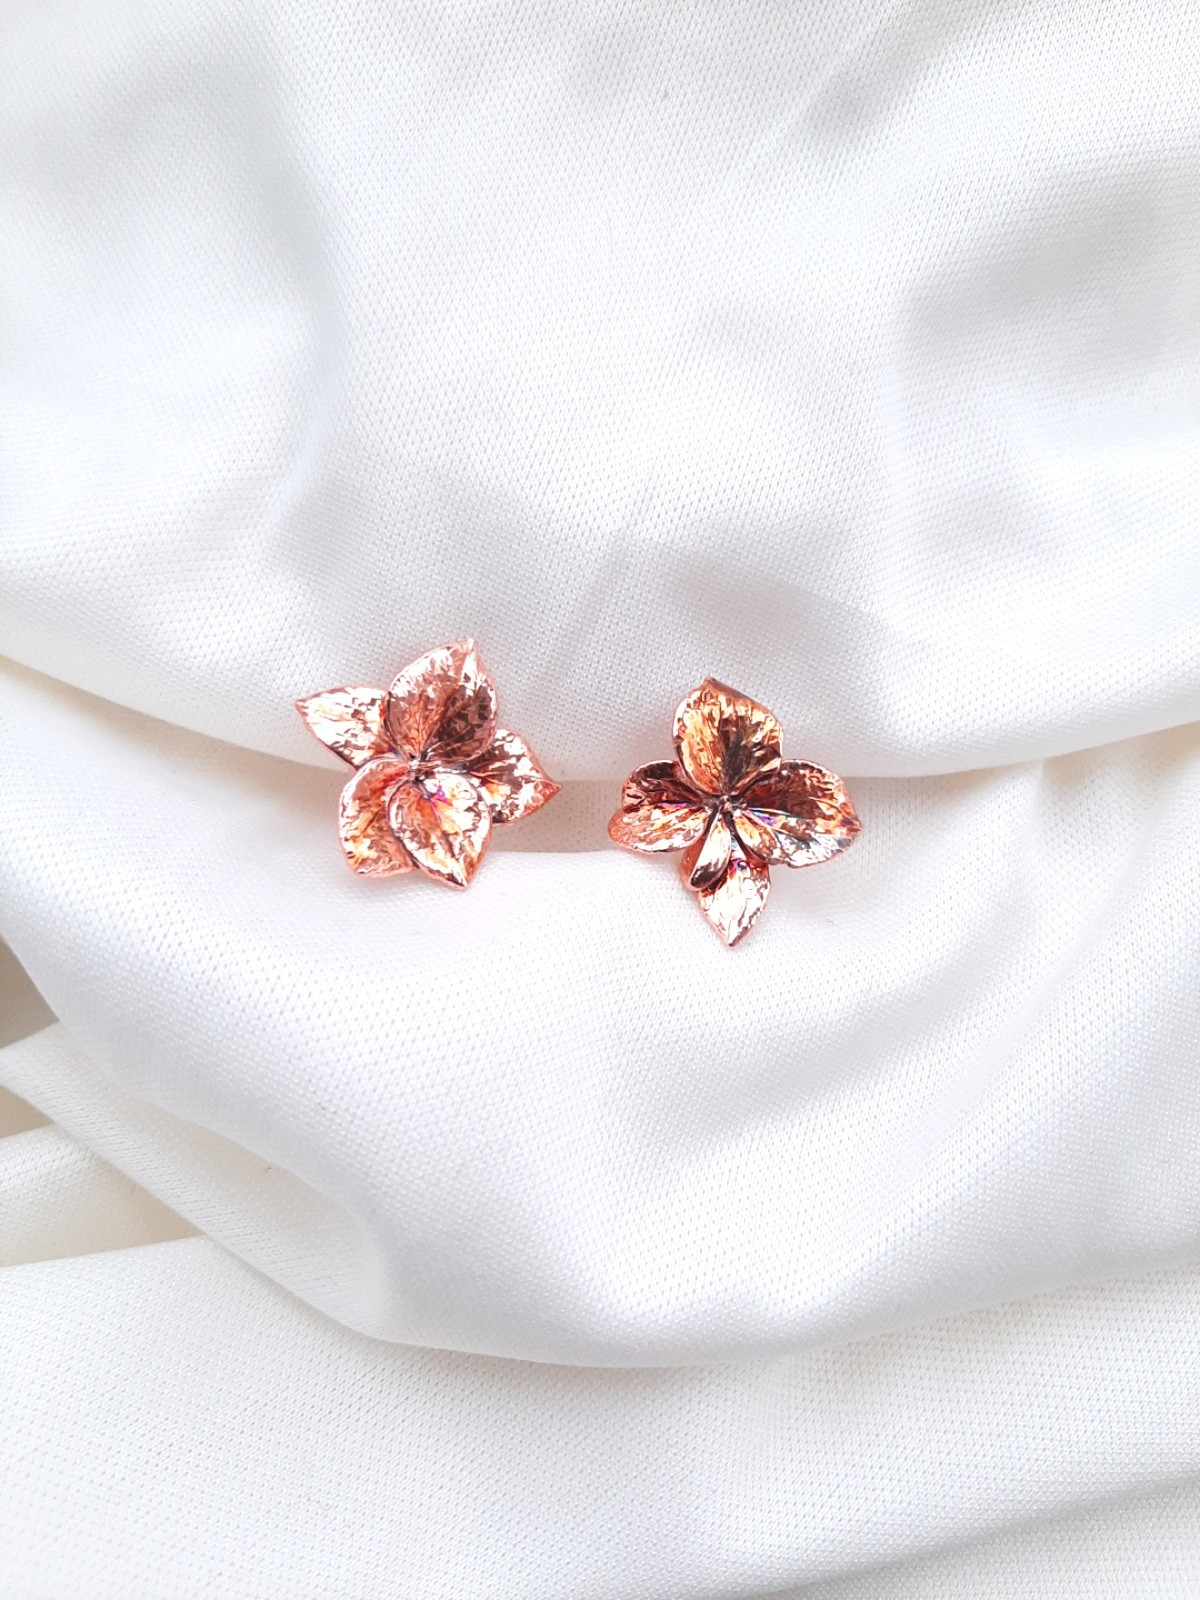 Real Hydrangea flower earrings electroformed copper.